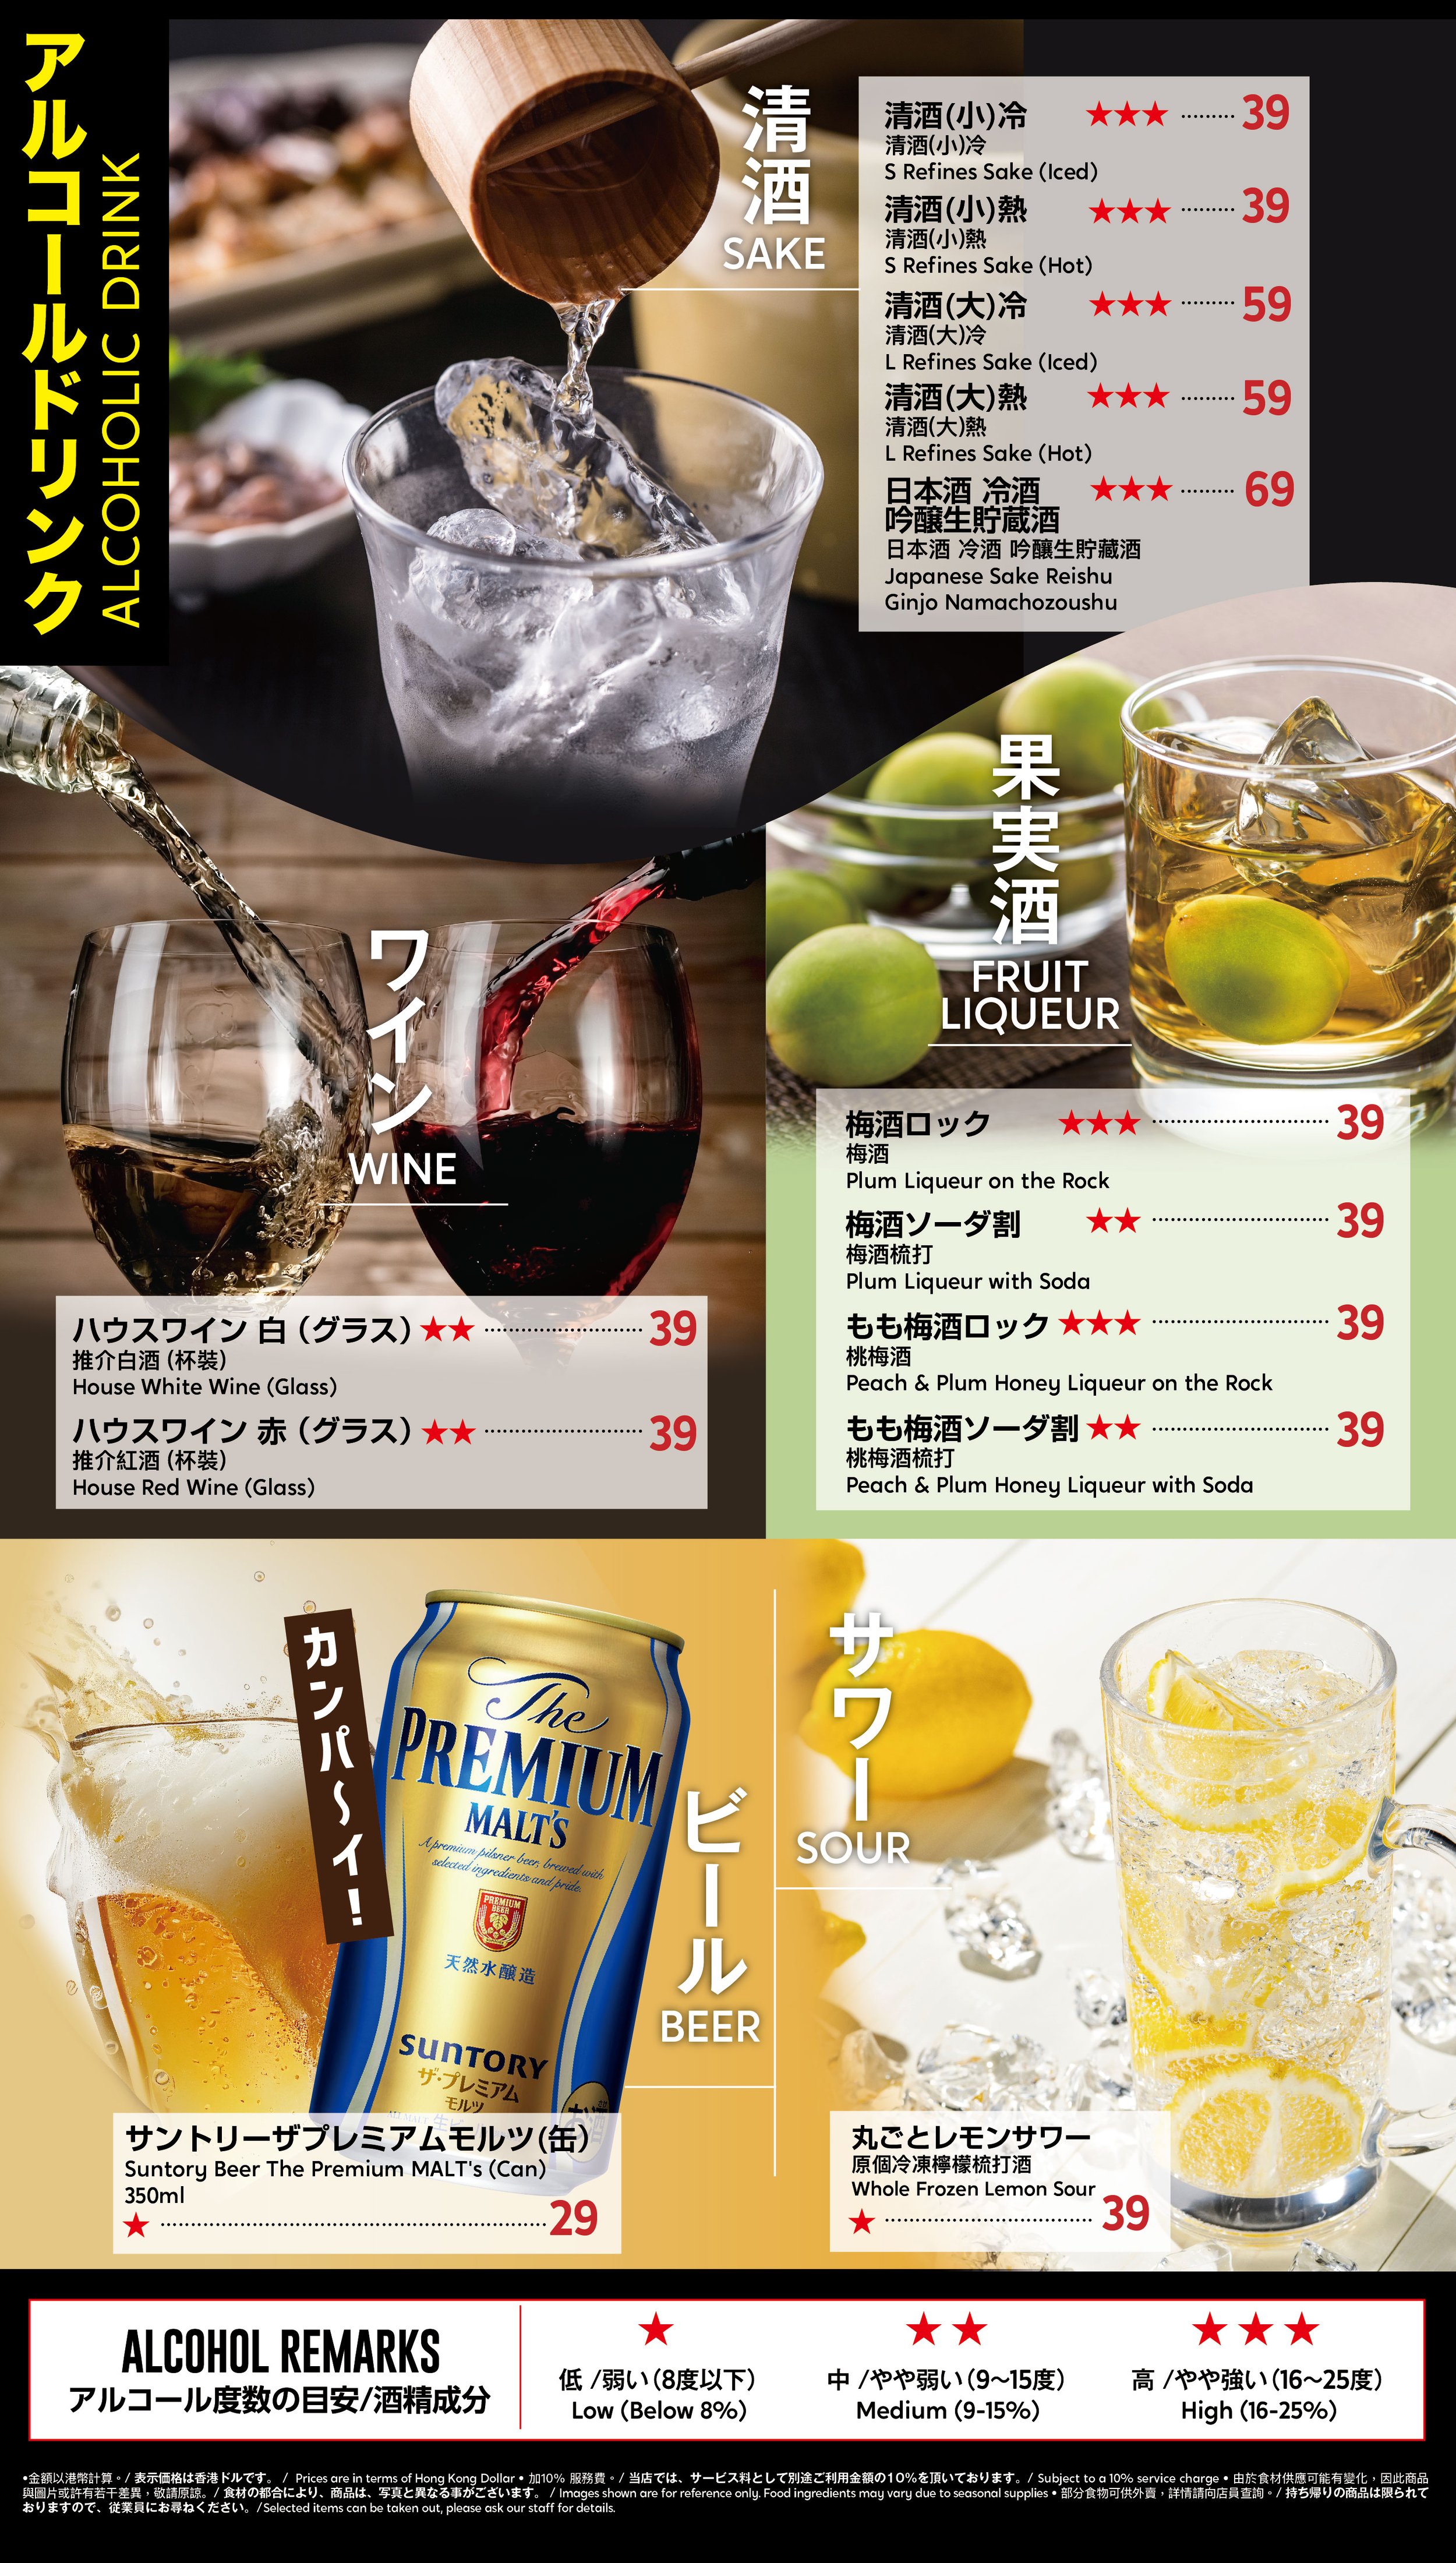 Watmi_Drink menu_back_AW-01.jpg